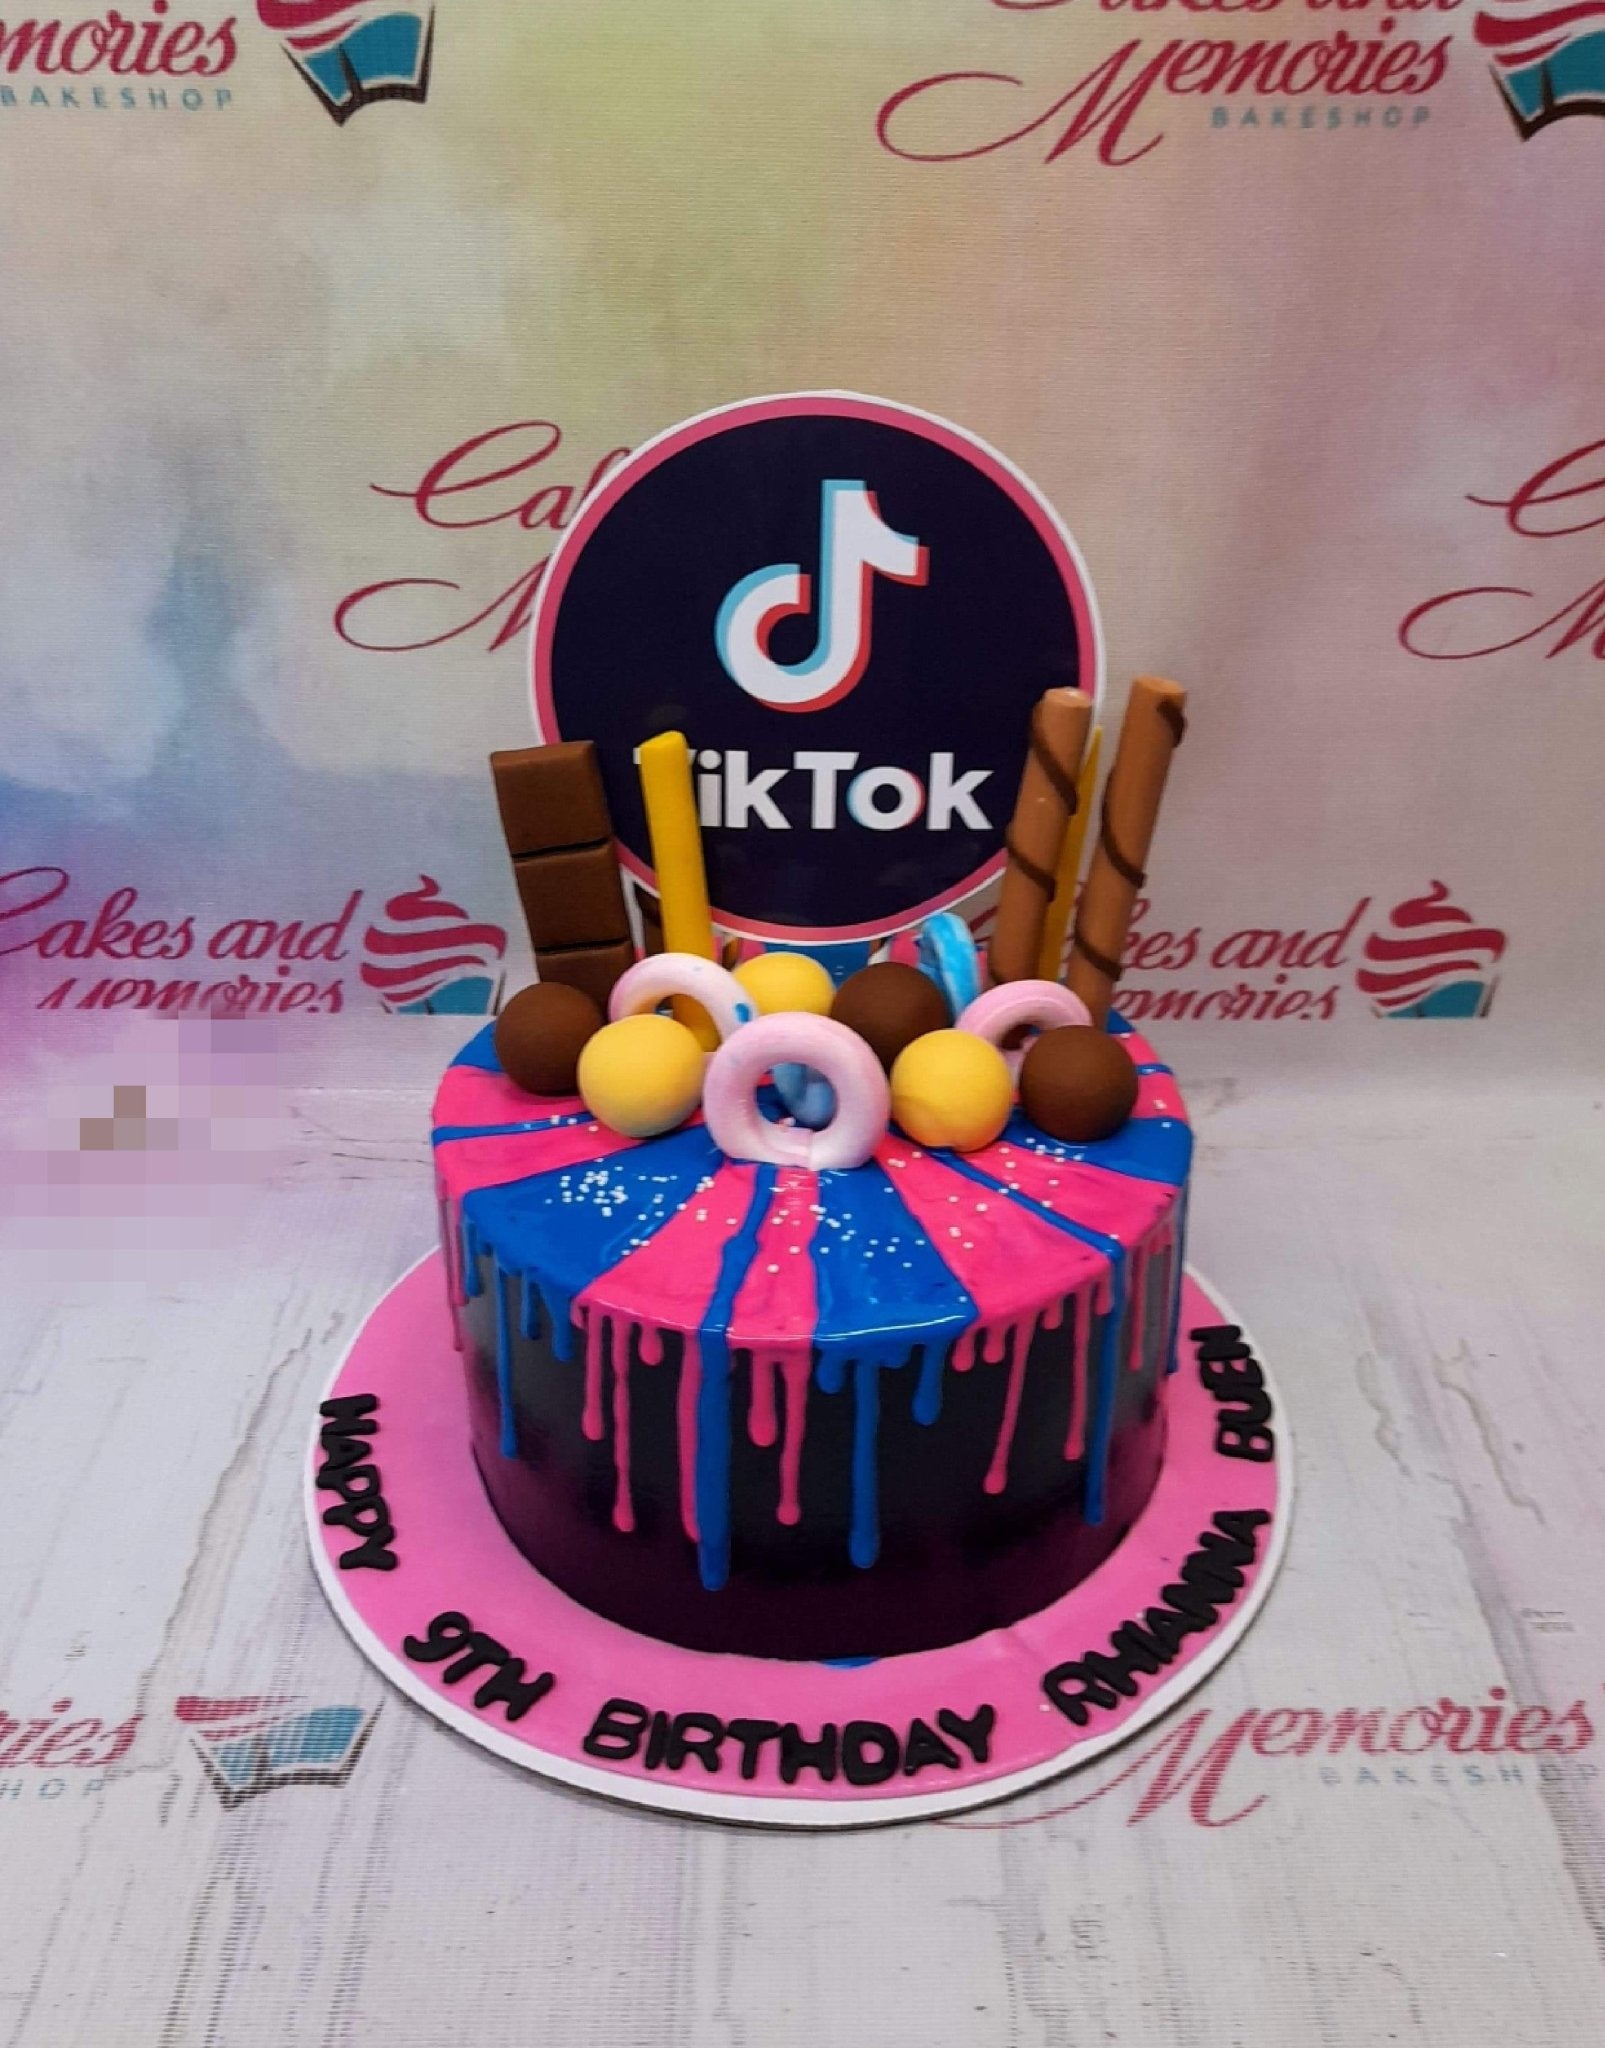 Tiktok Cake - 1104 – Cakes and Memories Bakeshop